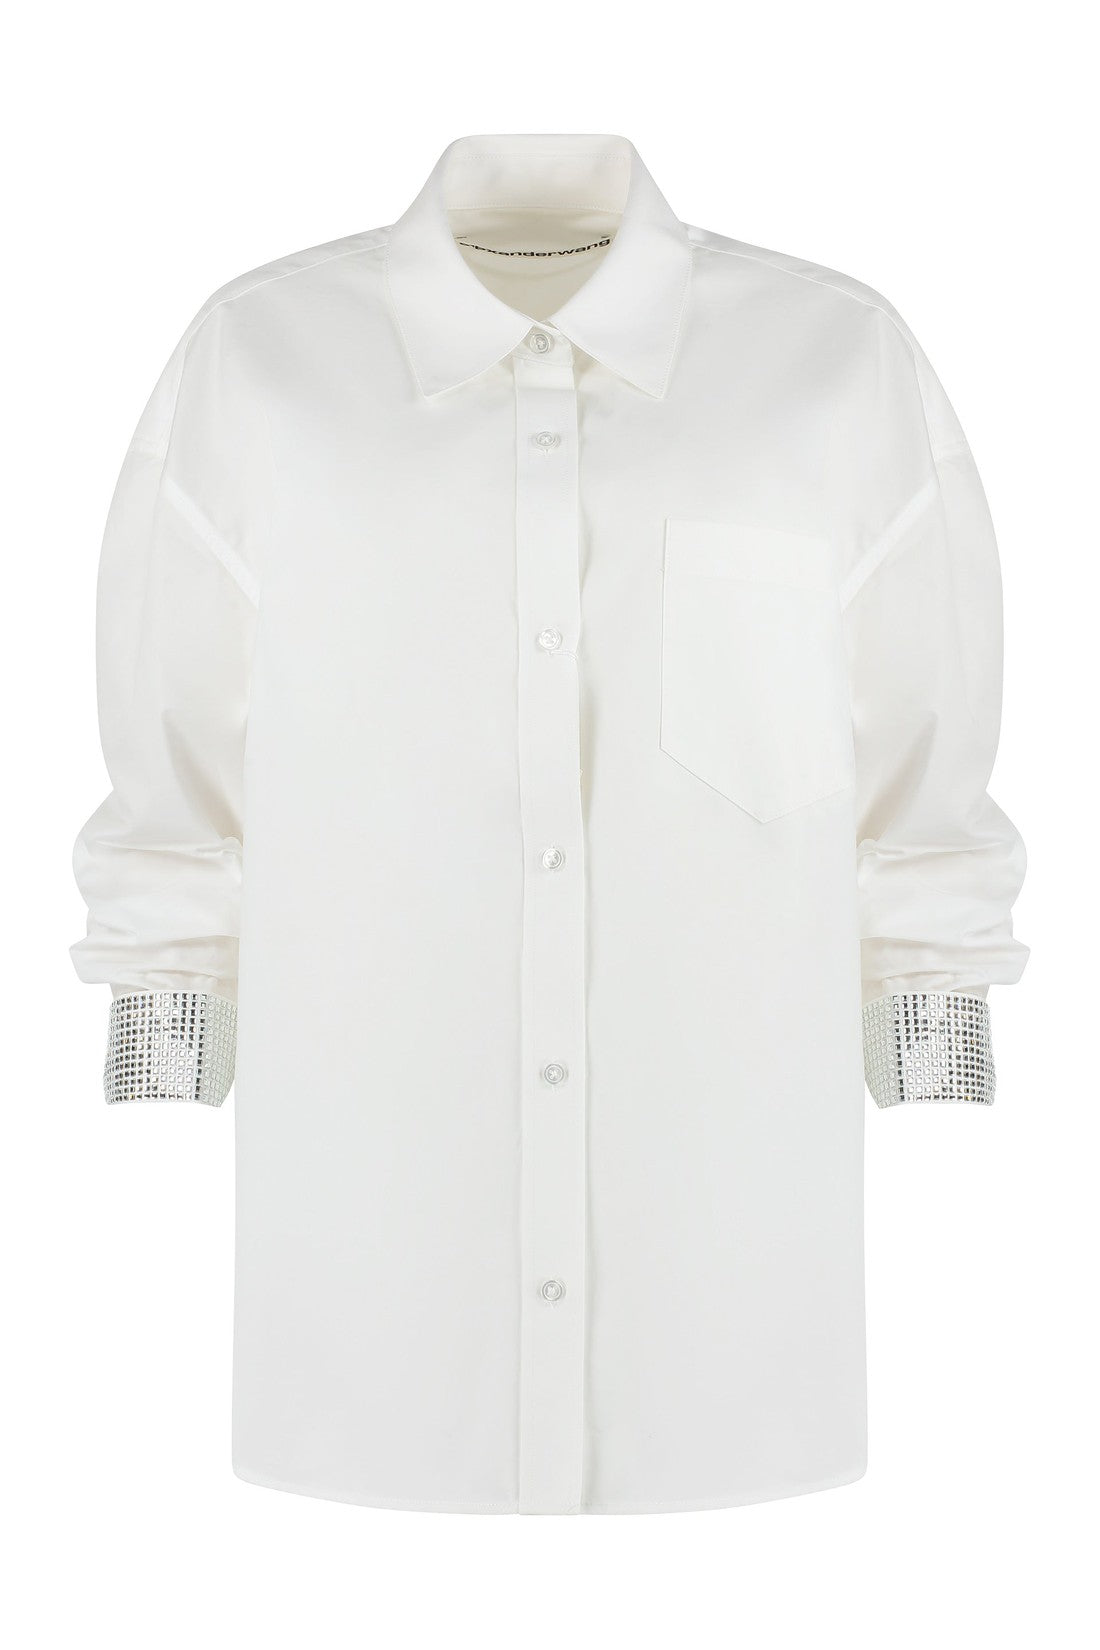 Alexander Wang-OUTLET-SALE-Cotton poplin shirt-ARCHIVIST